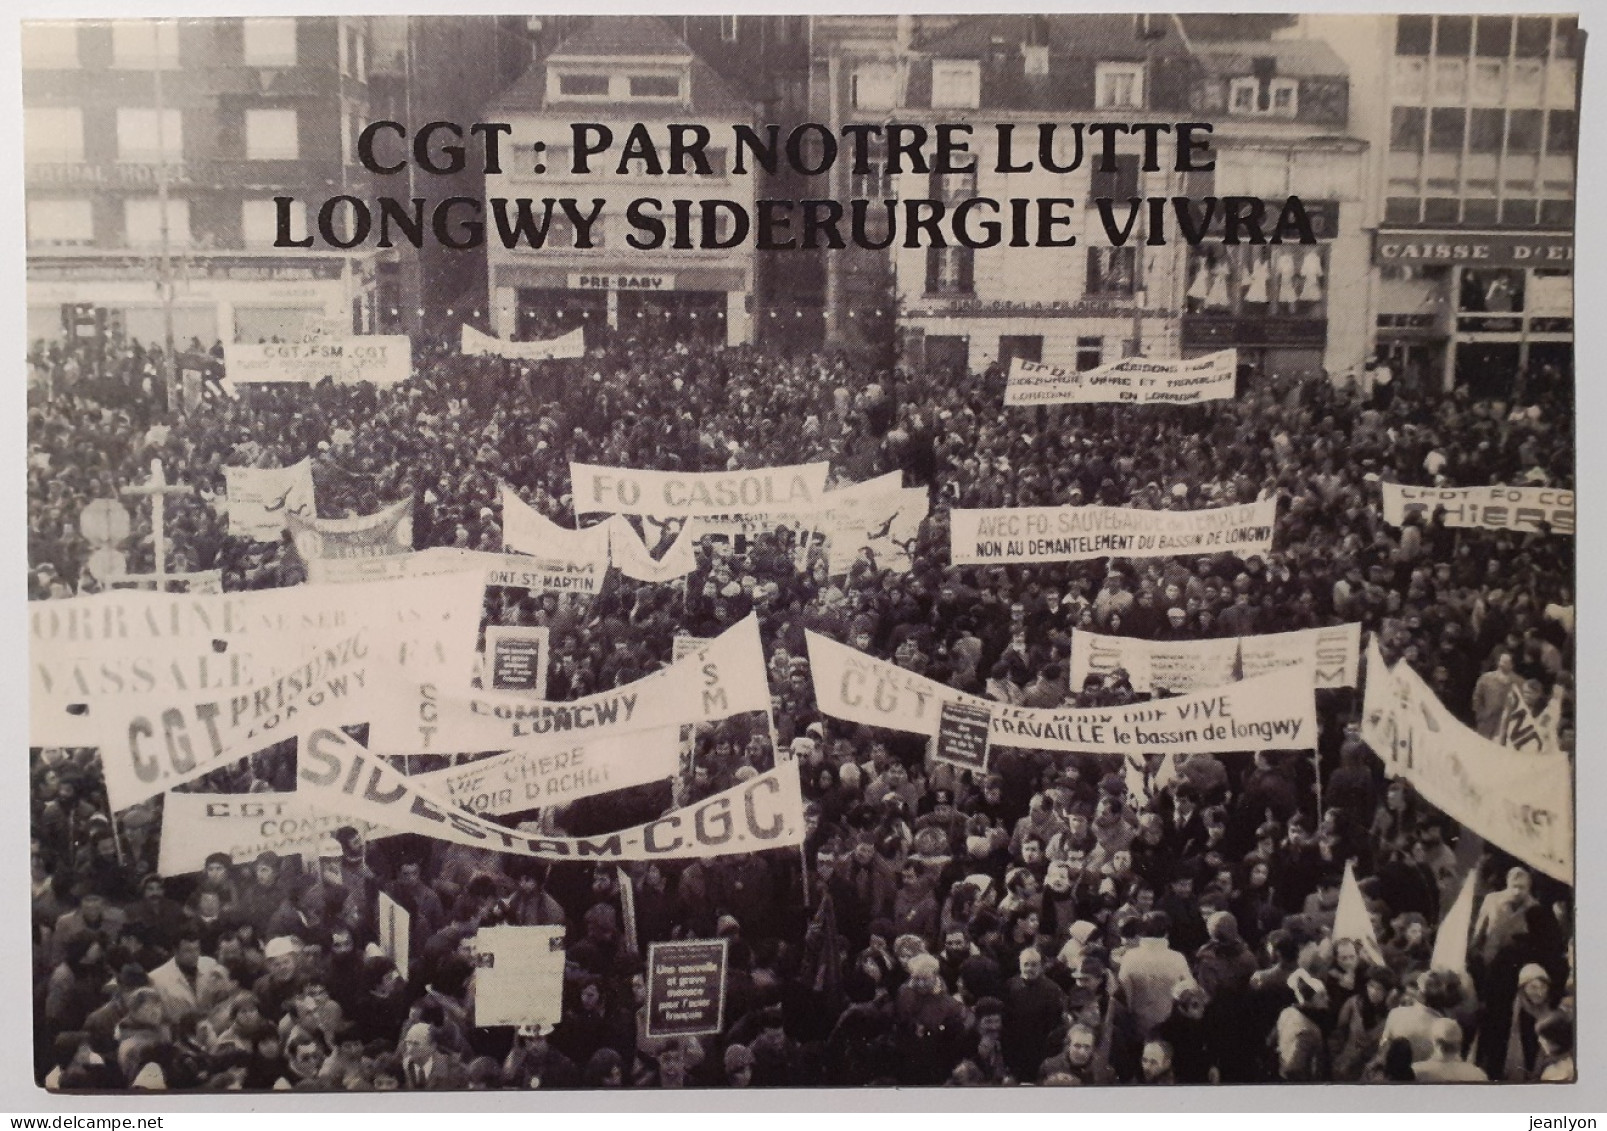 LONGWY (54 Meurthe Et Moselle) - Syndicat CGT / Manifestation 19 Décembre 1978 - Banderoles  - Manifestazioni